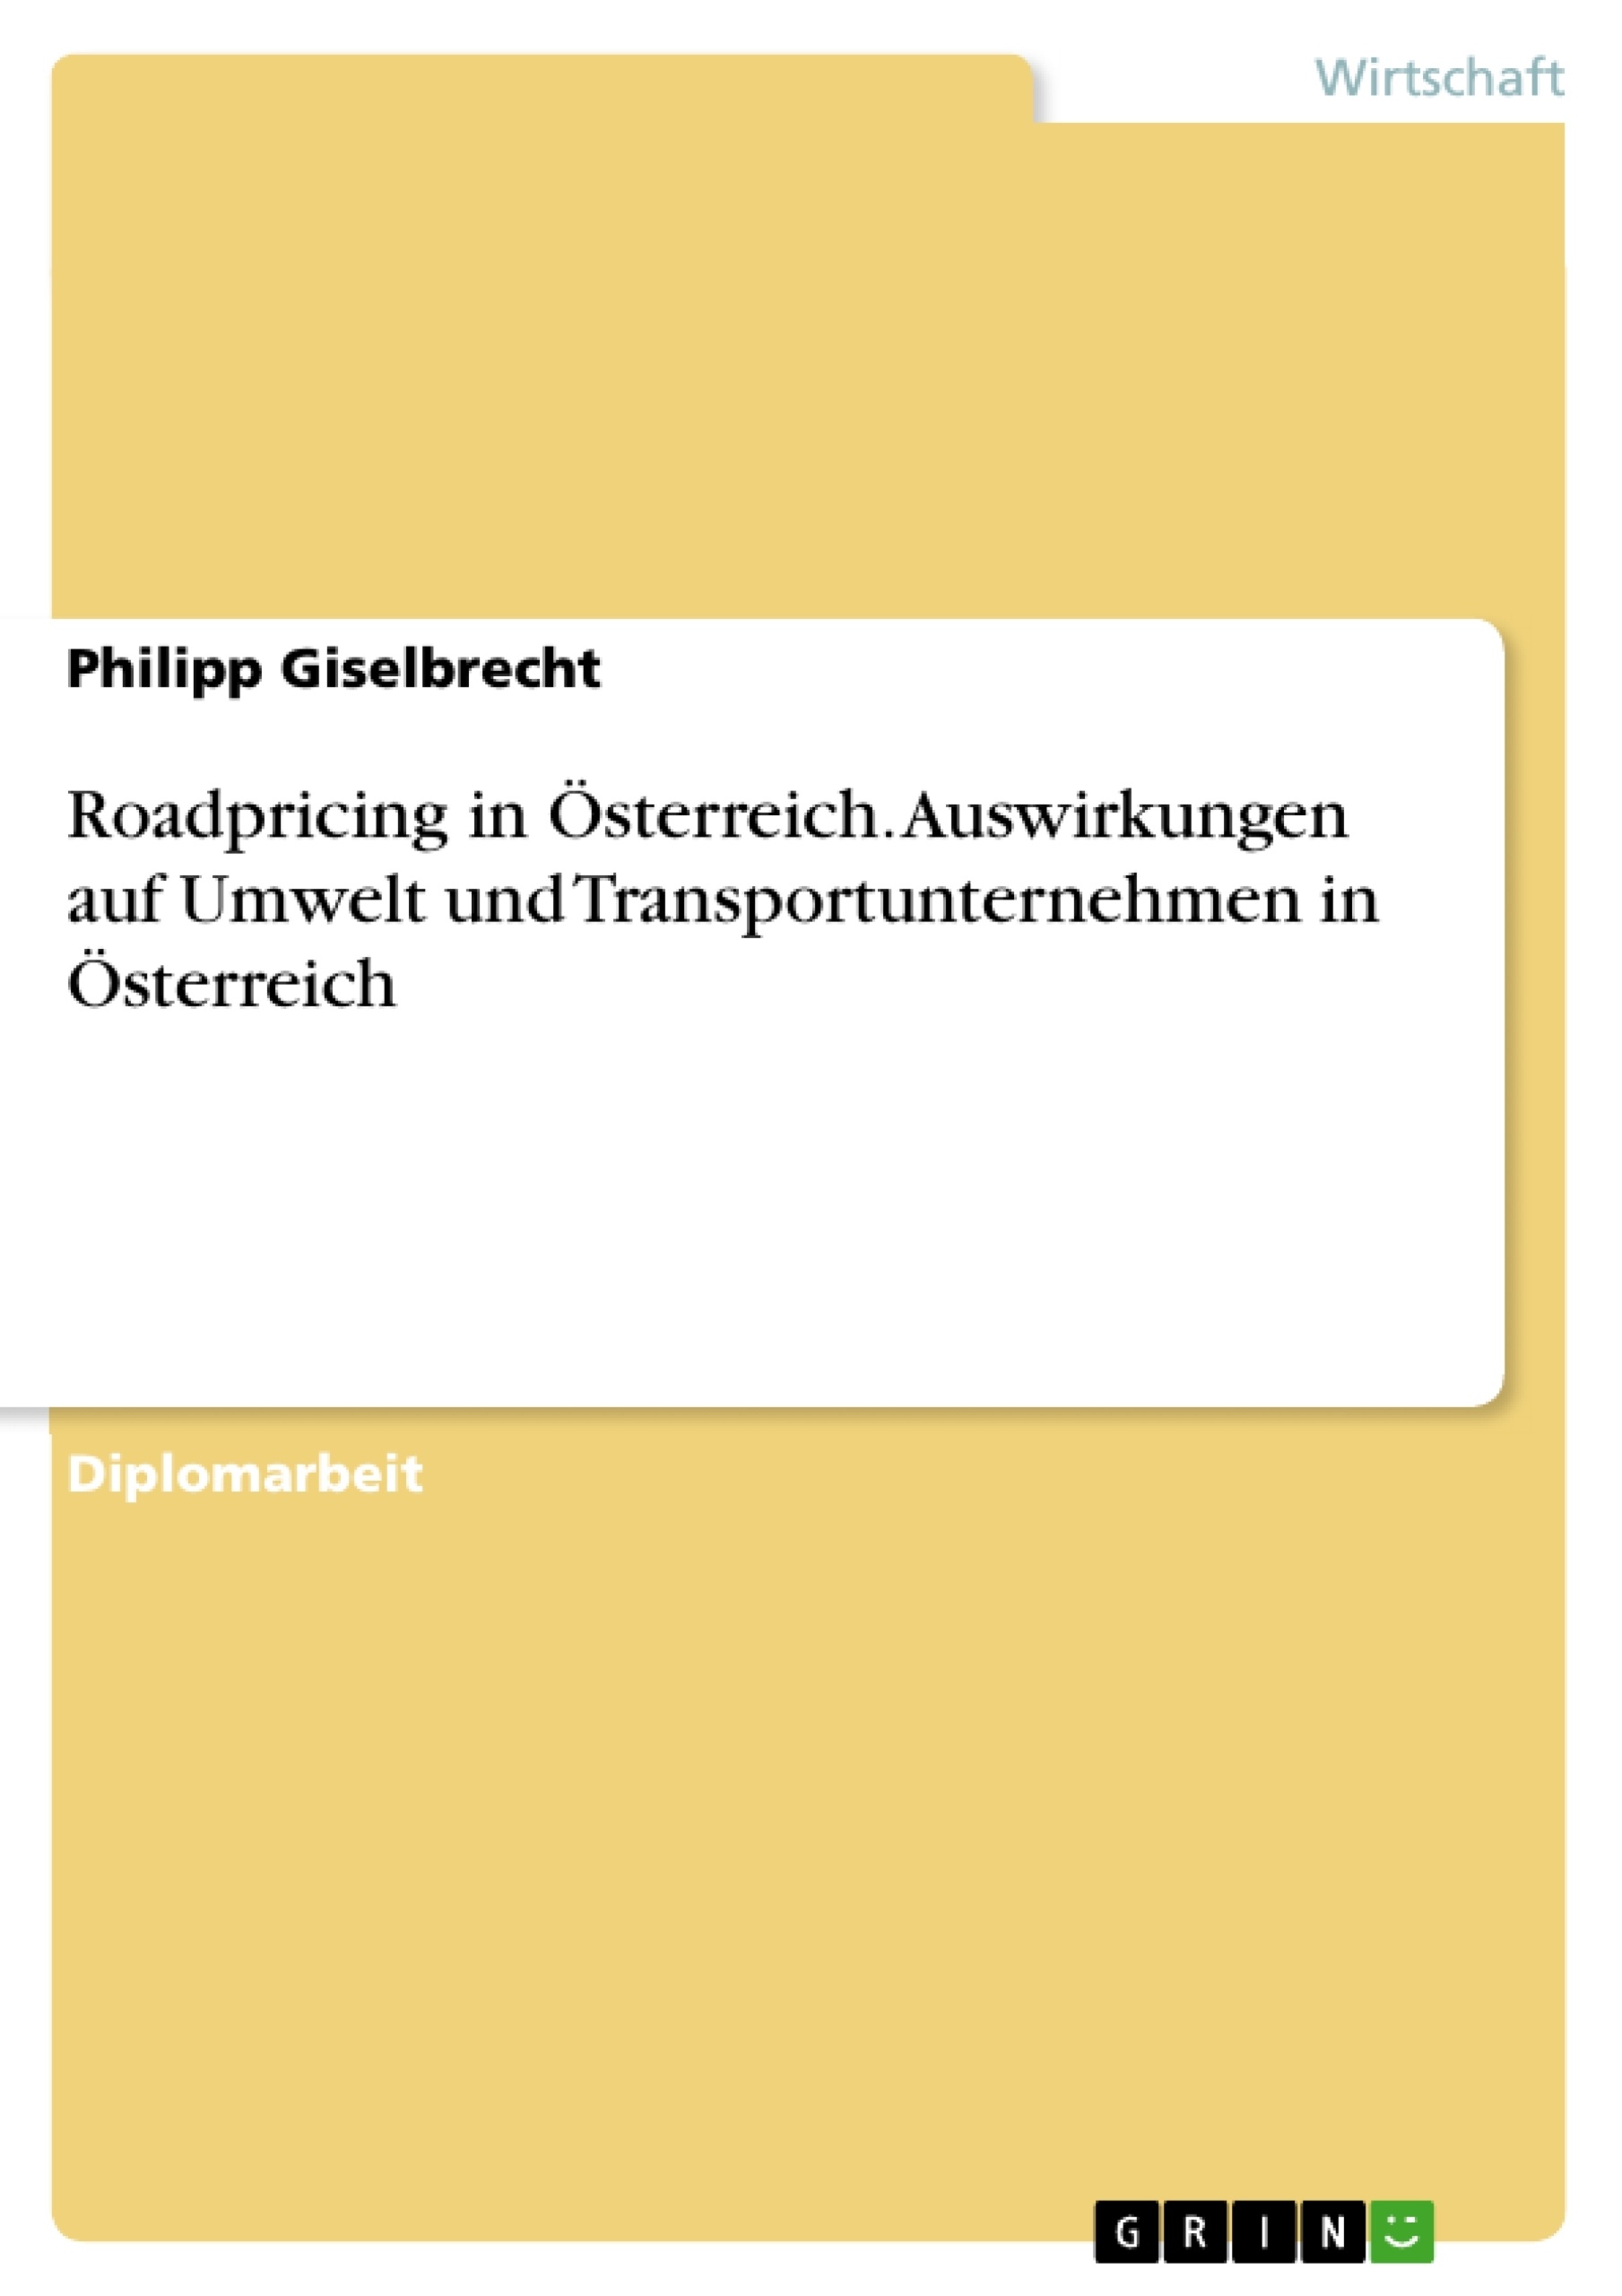 Título: Roadpricing in Österreich. Auswirkungen auf Umwelt und Transportunternehmen in Österreich